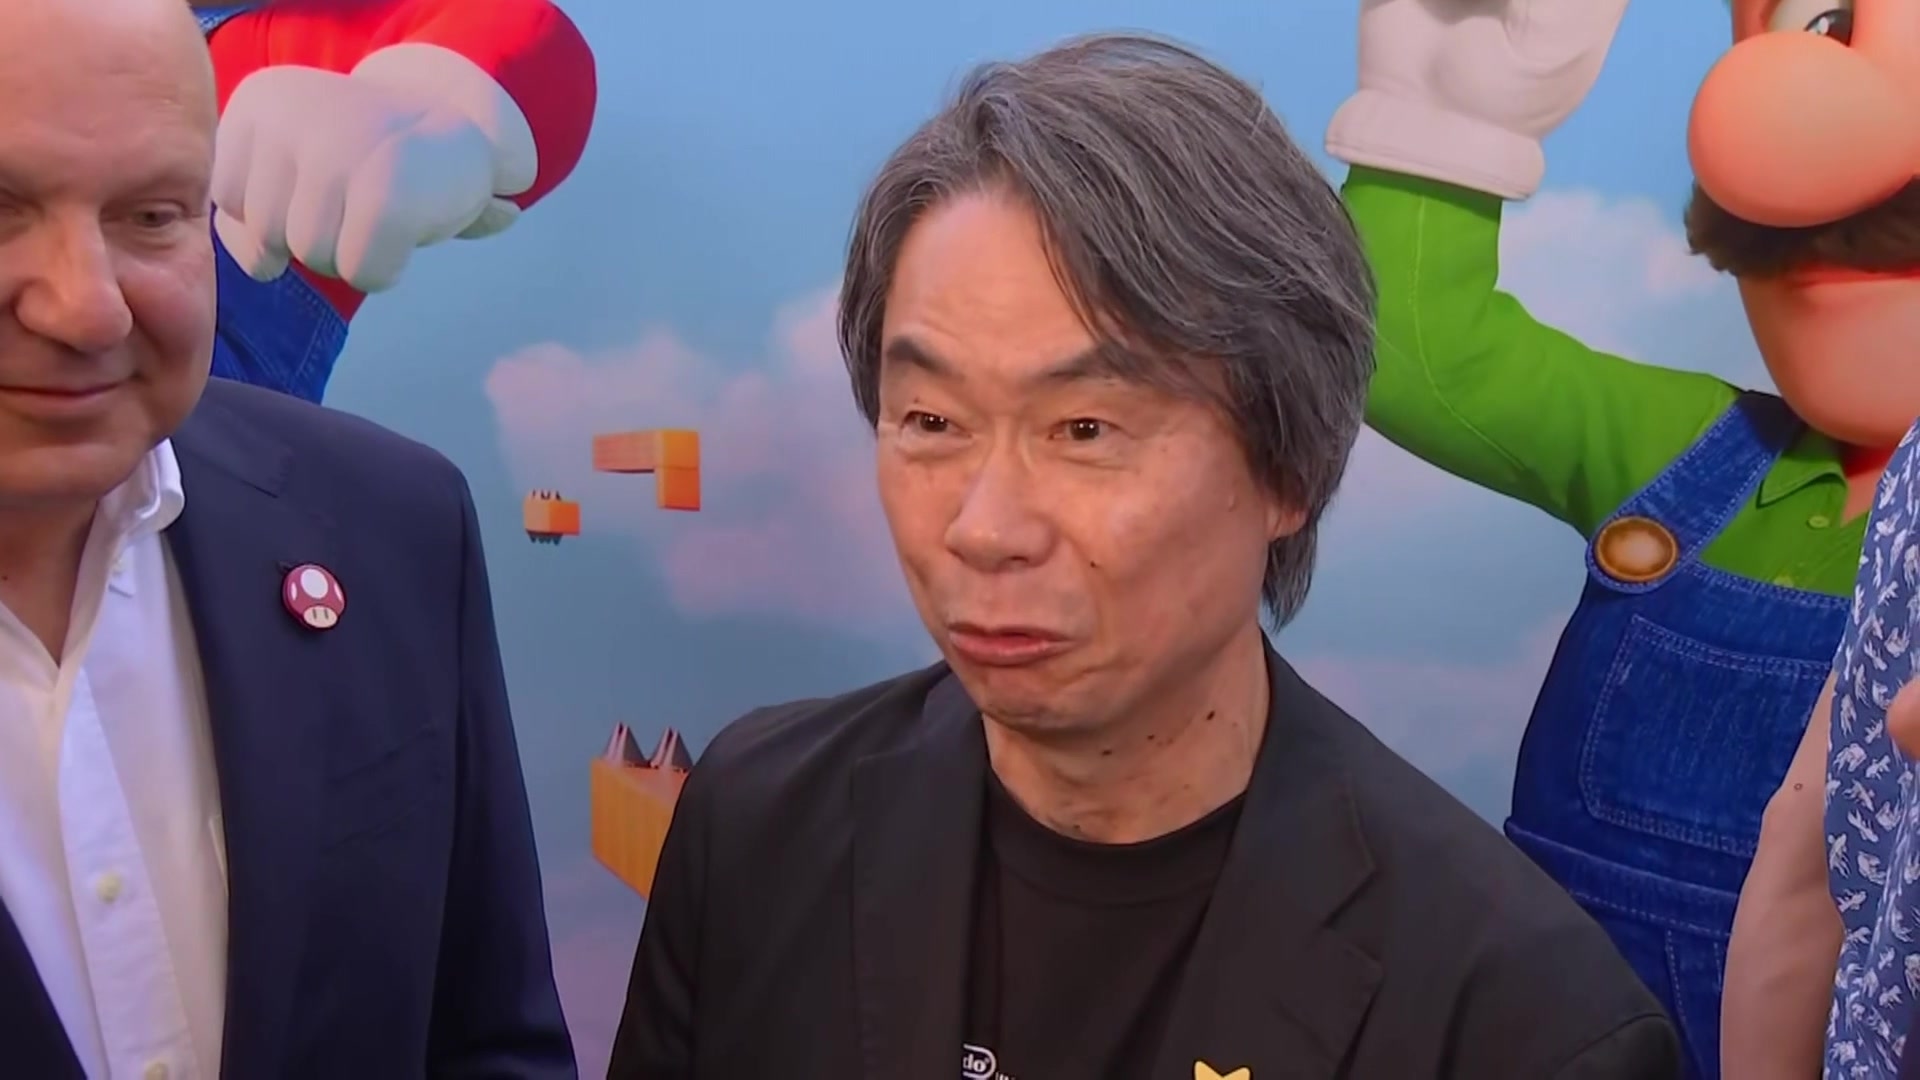 CBS New York - Happy birthday Shigeru Miyamoto! The Nintendo video